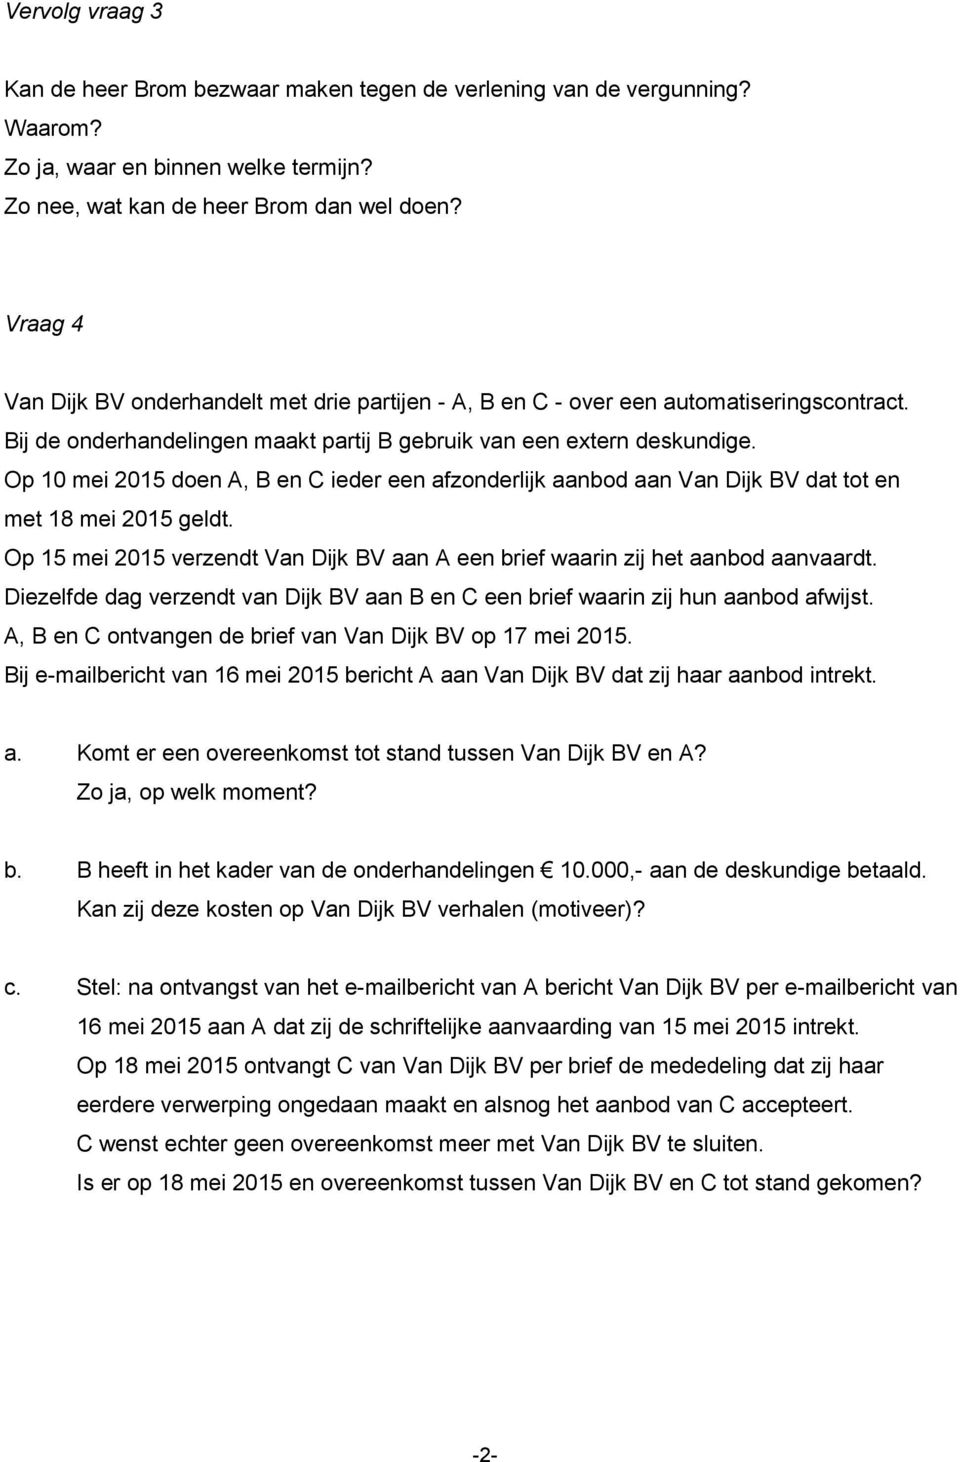 Op 10 mei 2015 doen A, B en C ieder een afzonderlijk aanbod aan Van Dijk BV dat tot en met 18 mei 2015 geldt. Op 15 mei 2015 verzendt Van Dijk BV aan A een brief waarin zij het aanbod aanvaardt.